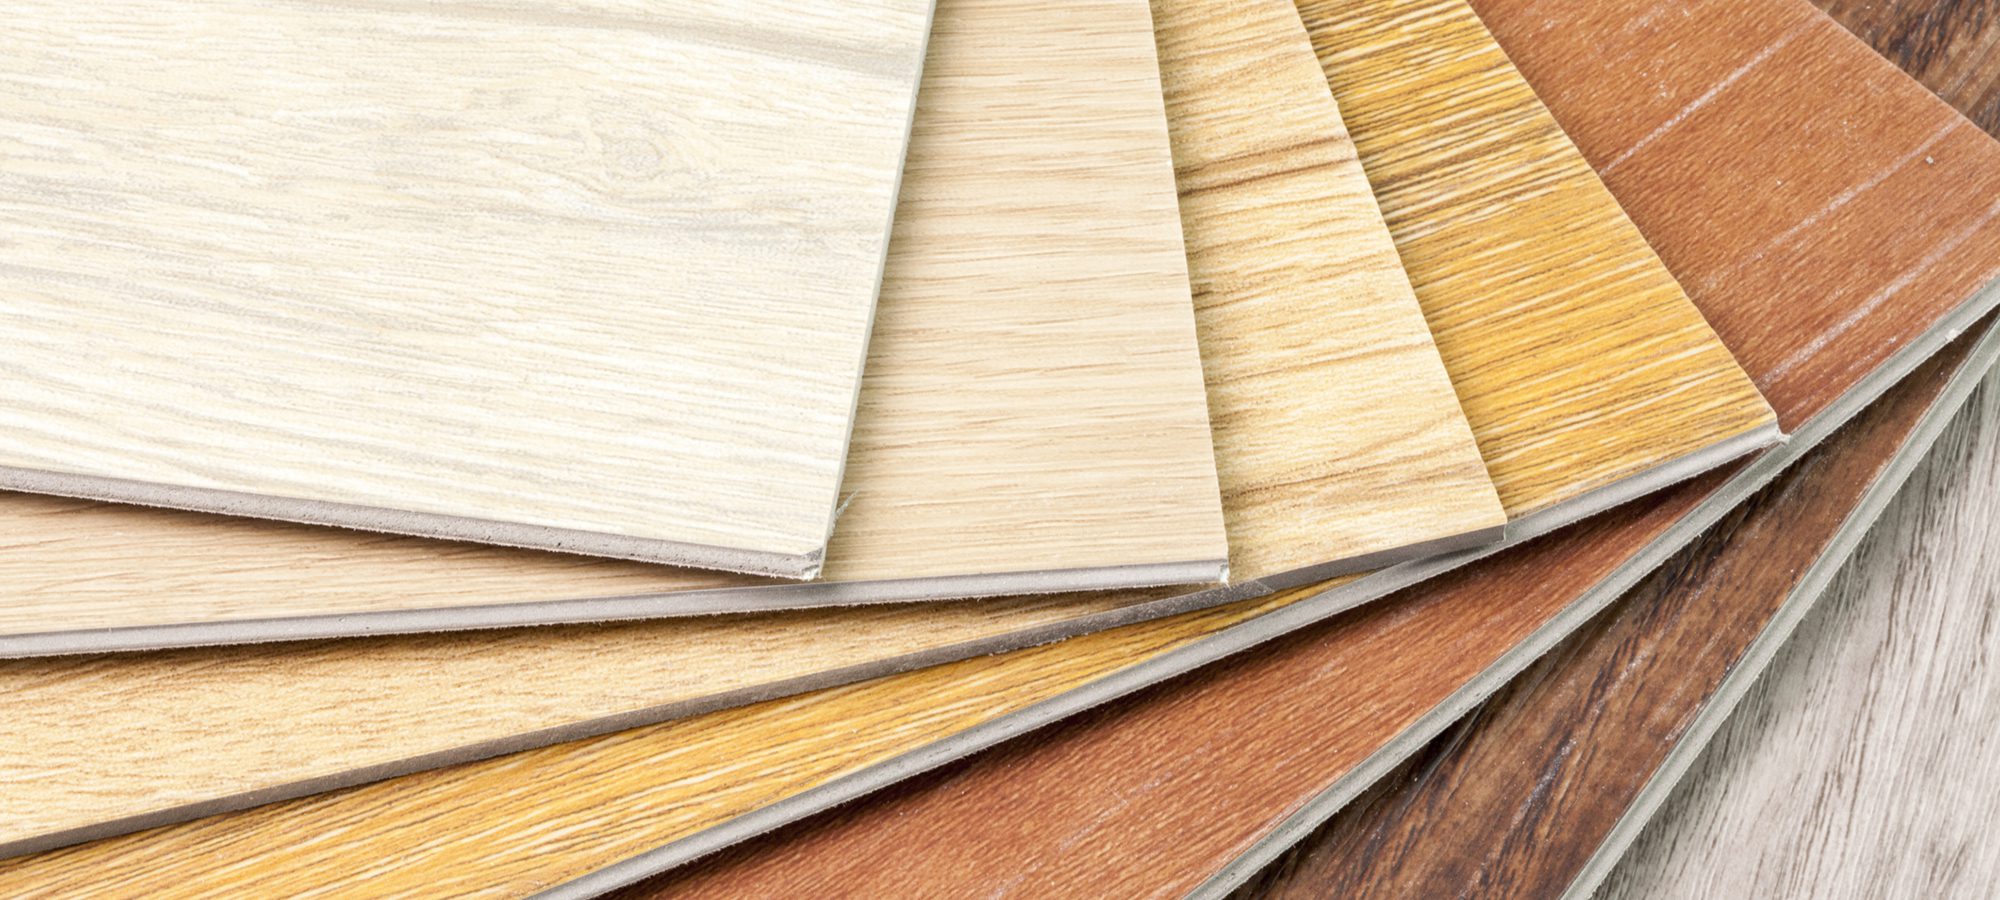 wood floor tile samples